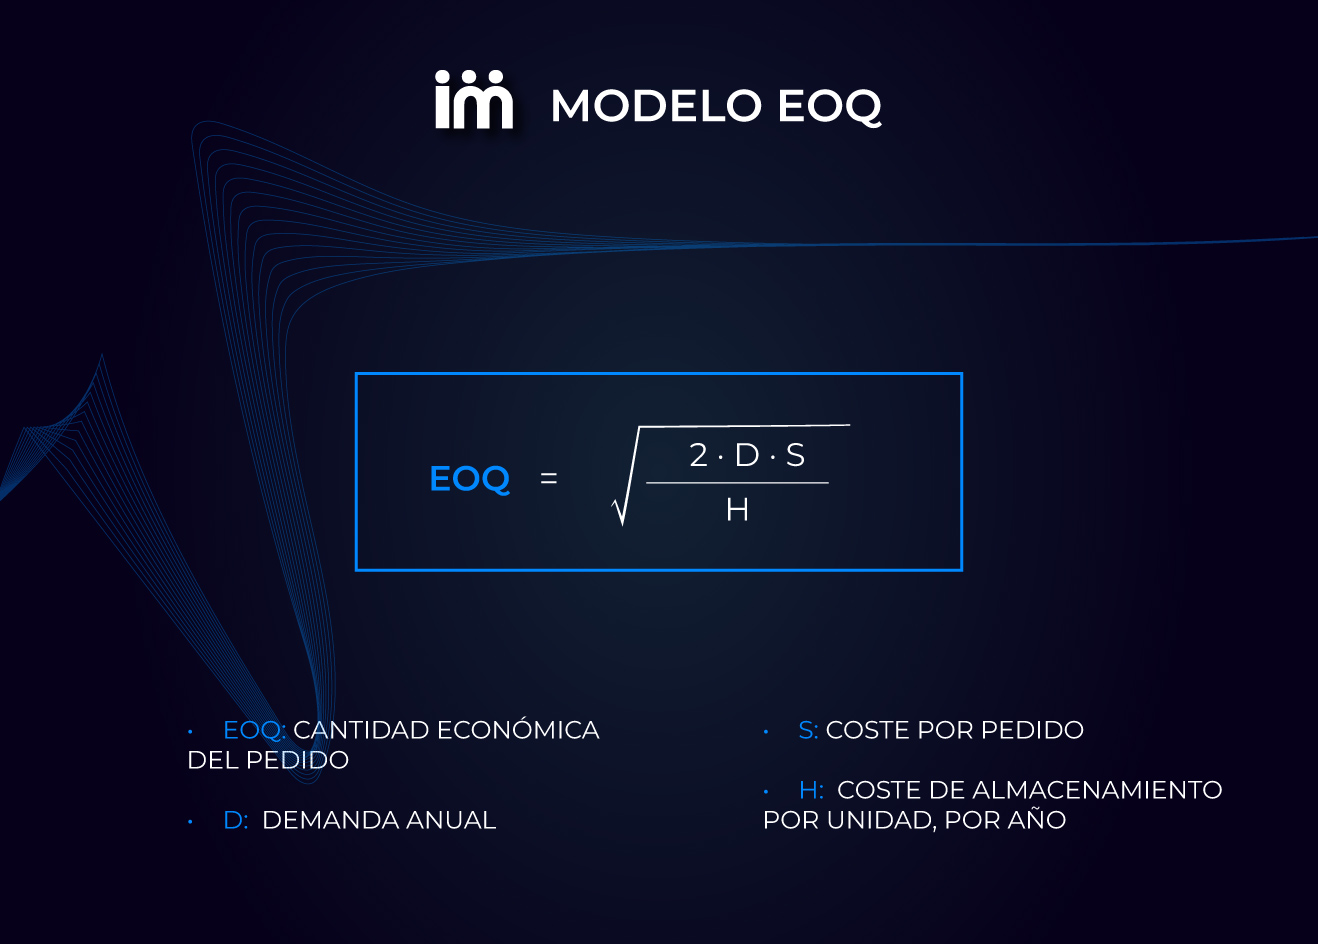 Fórmula para calcular el Modelo EOQ